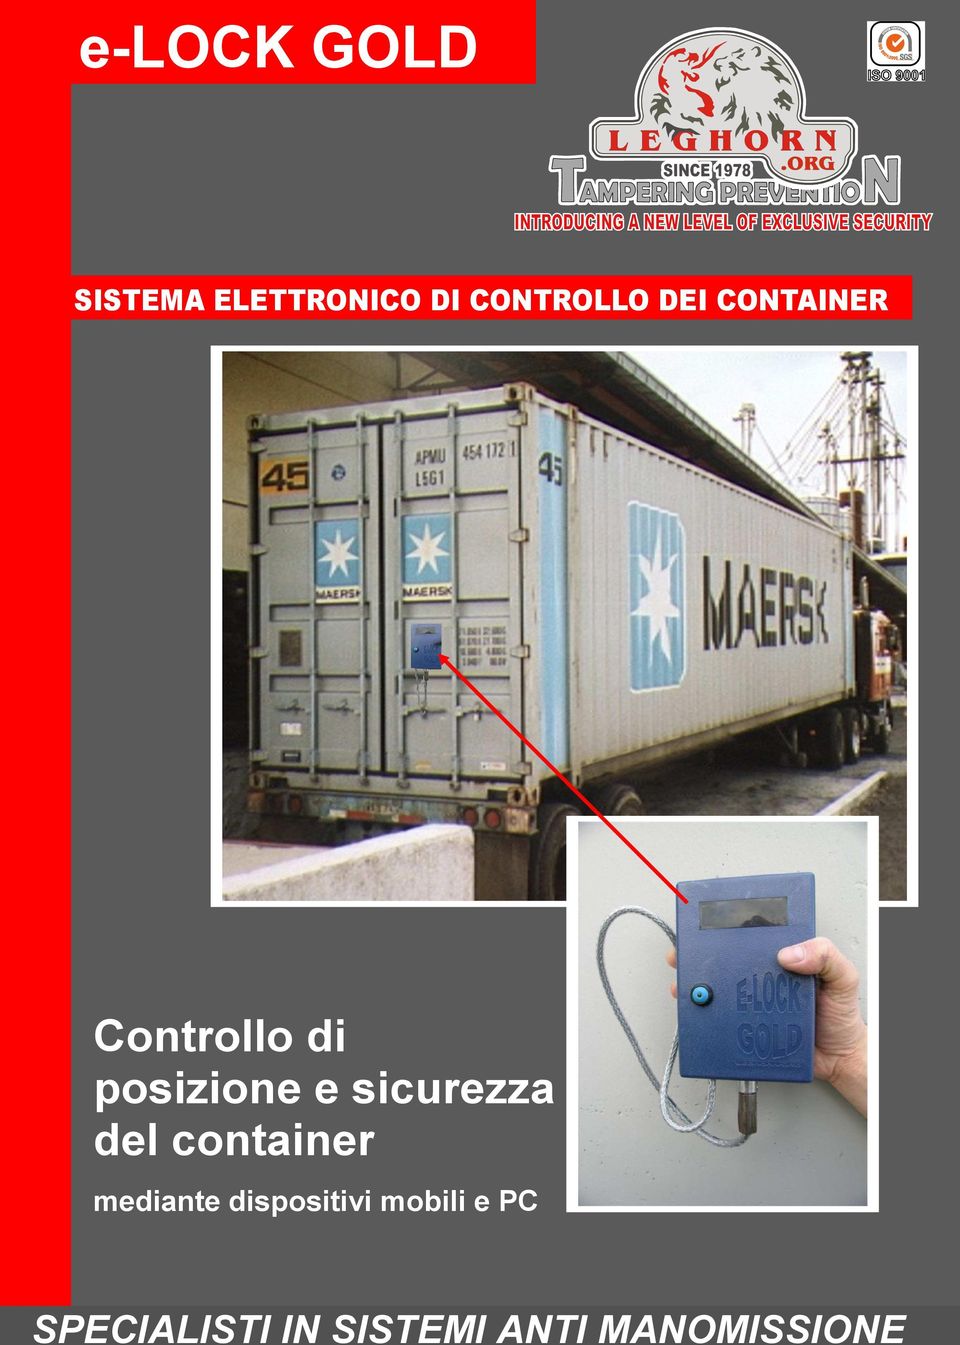 sicurezza del container mediante dispositivi